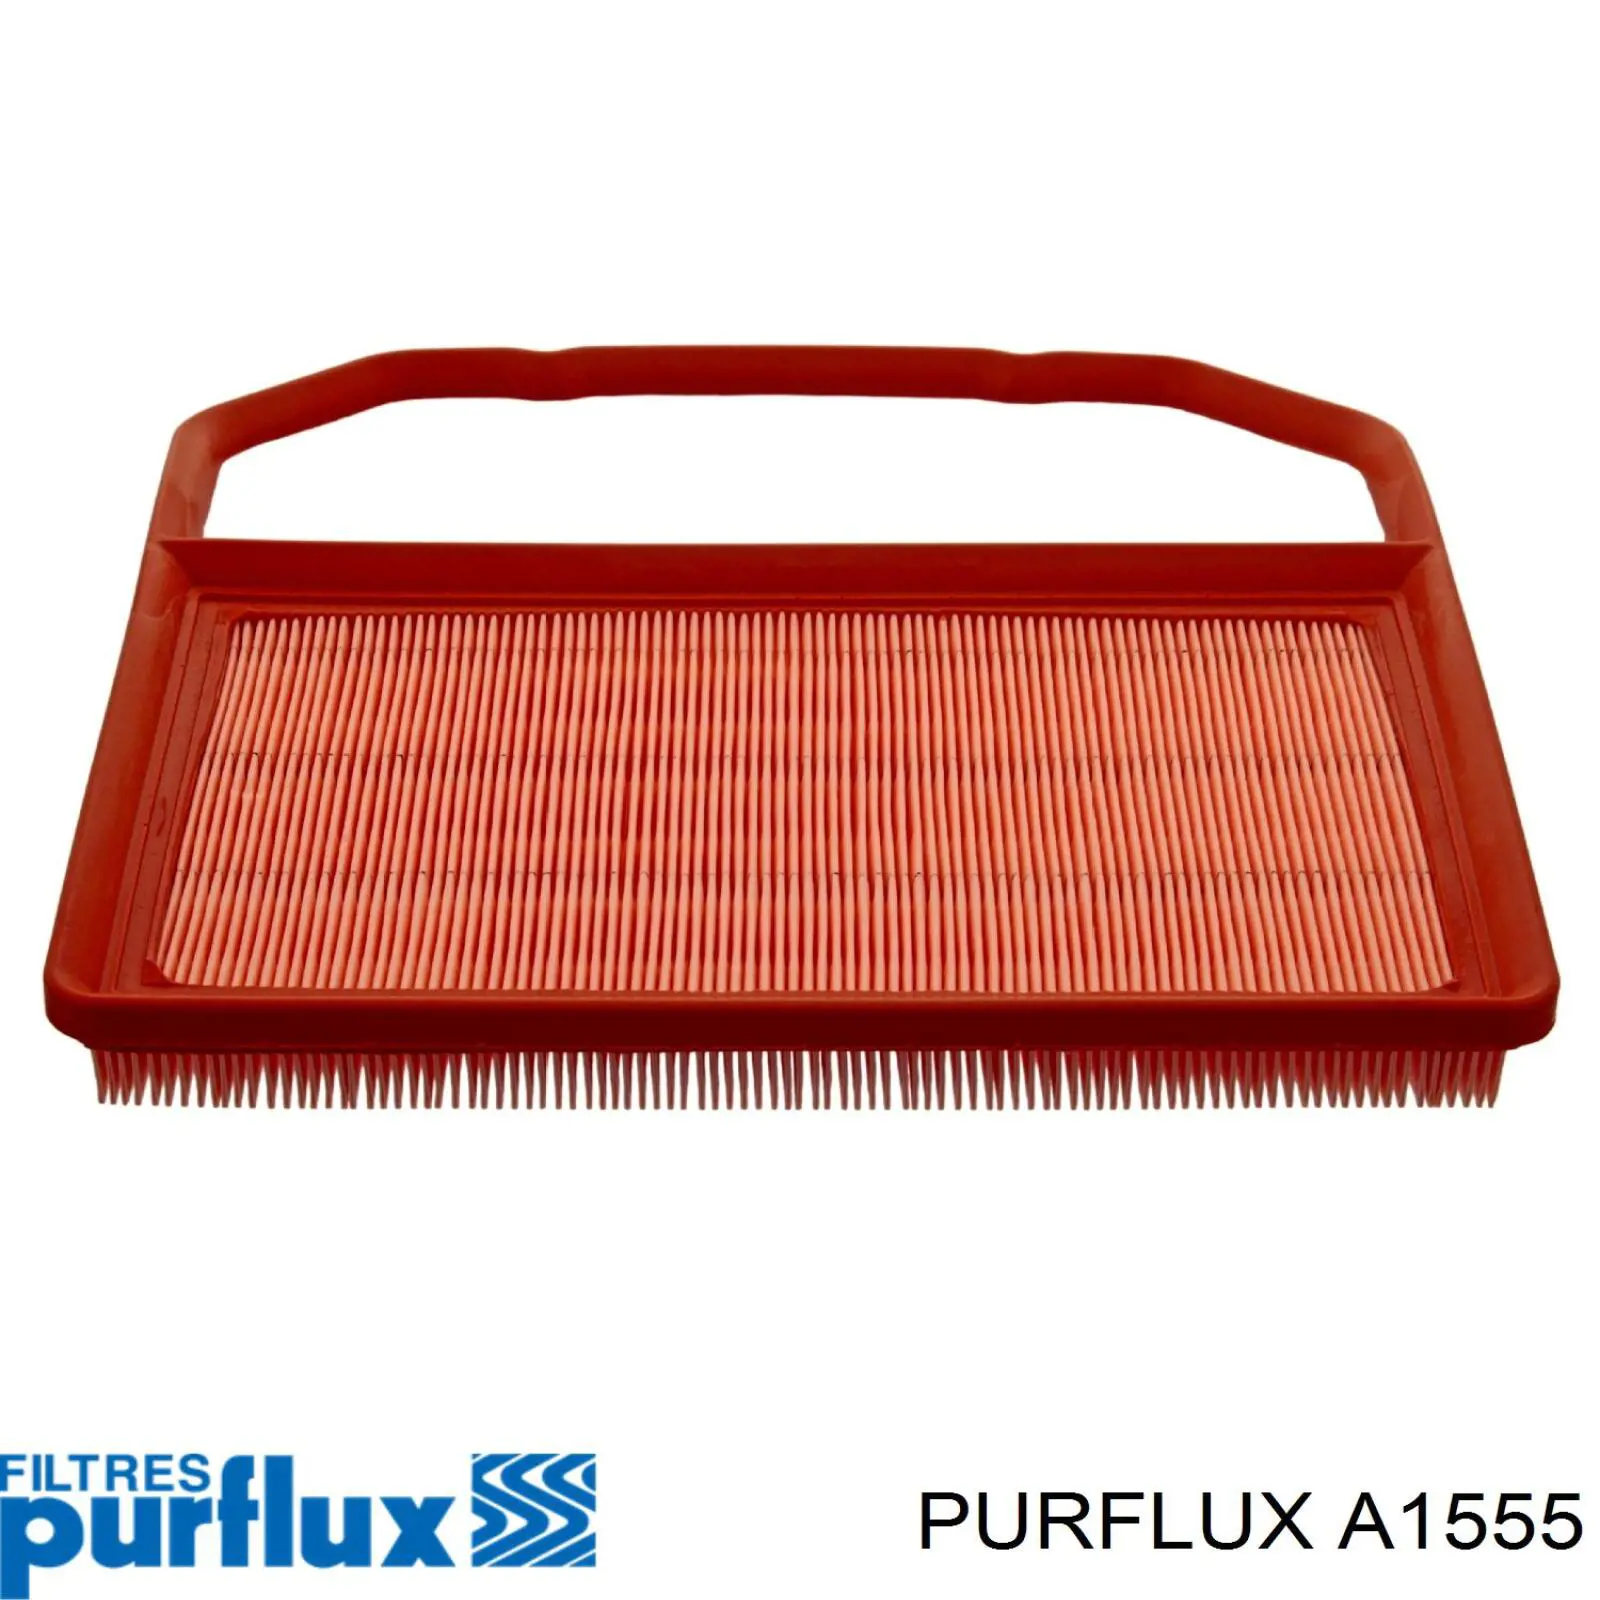 A1555 Purflux filtro de aire